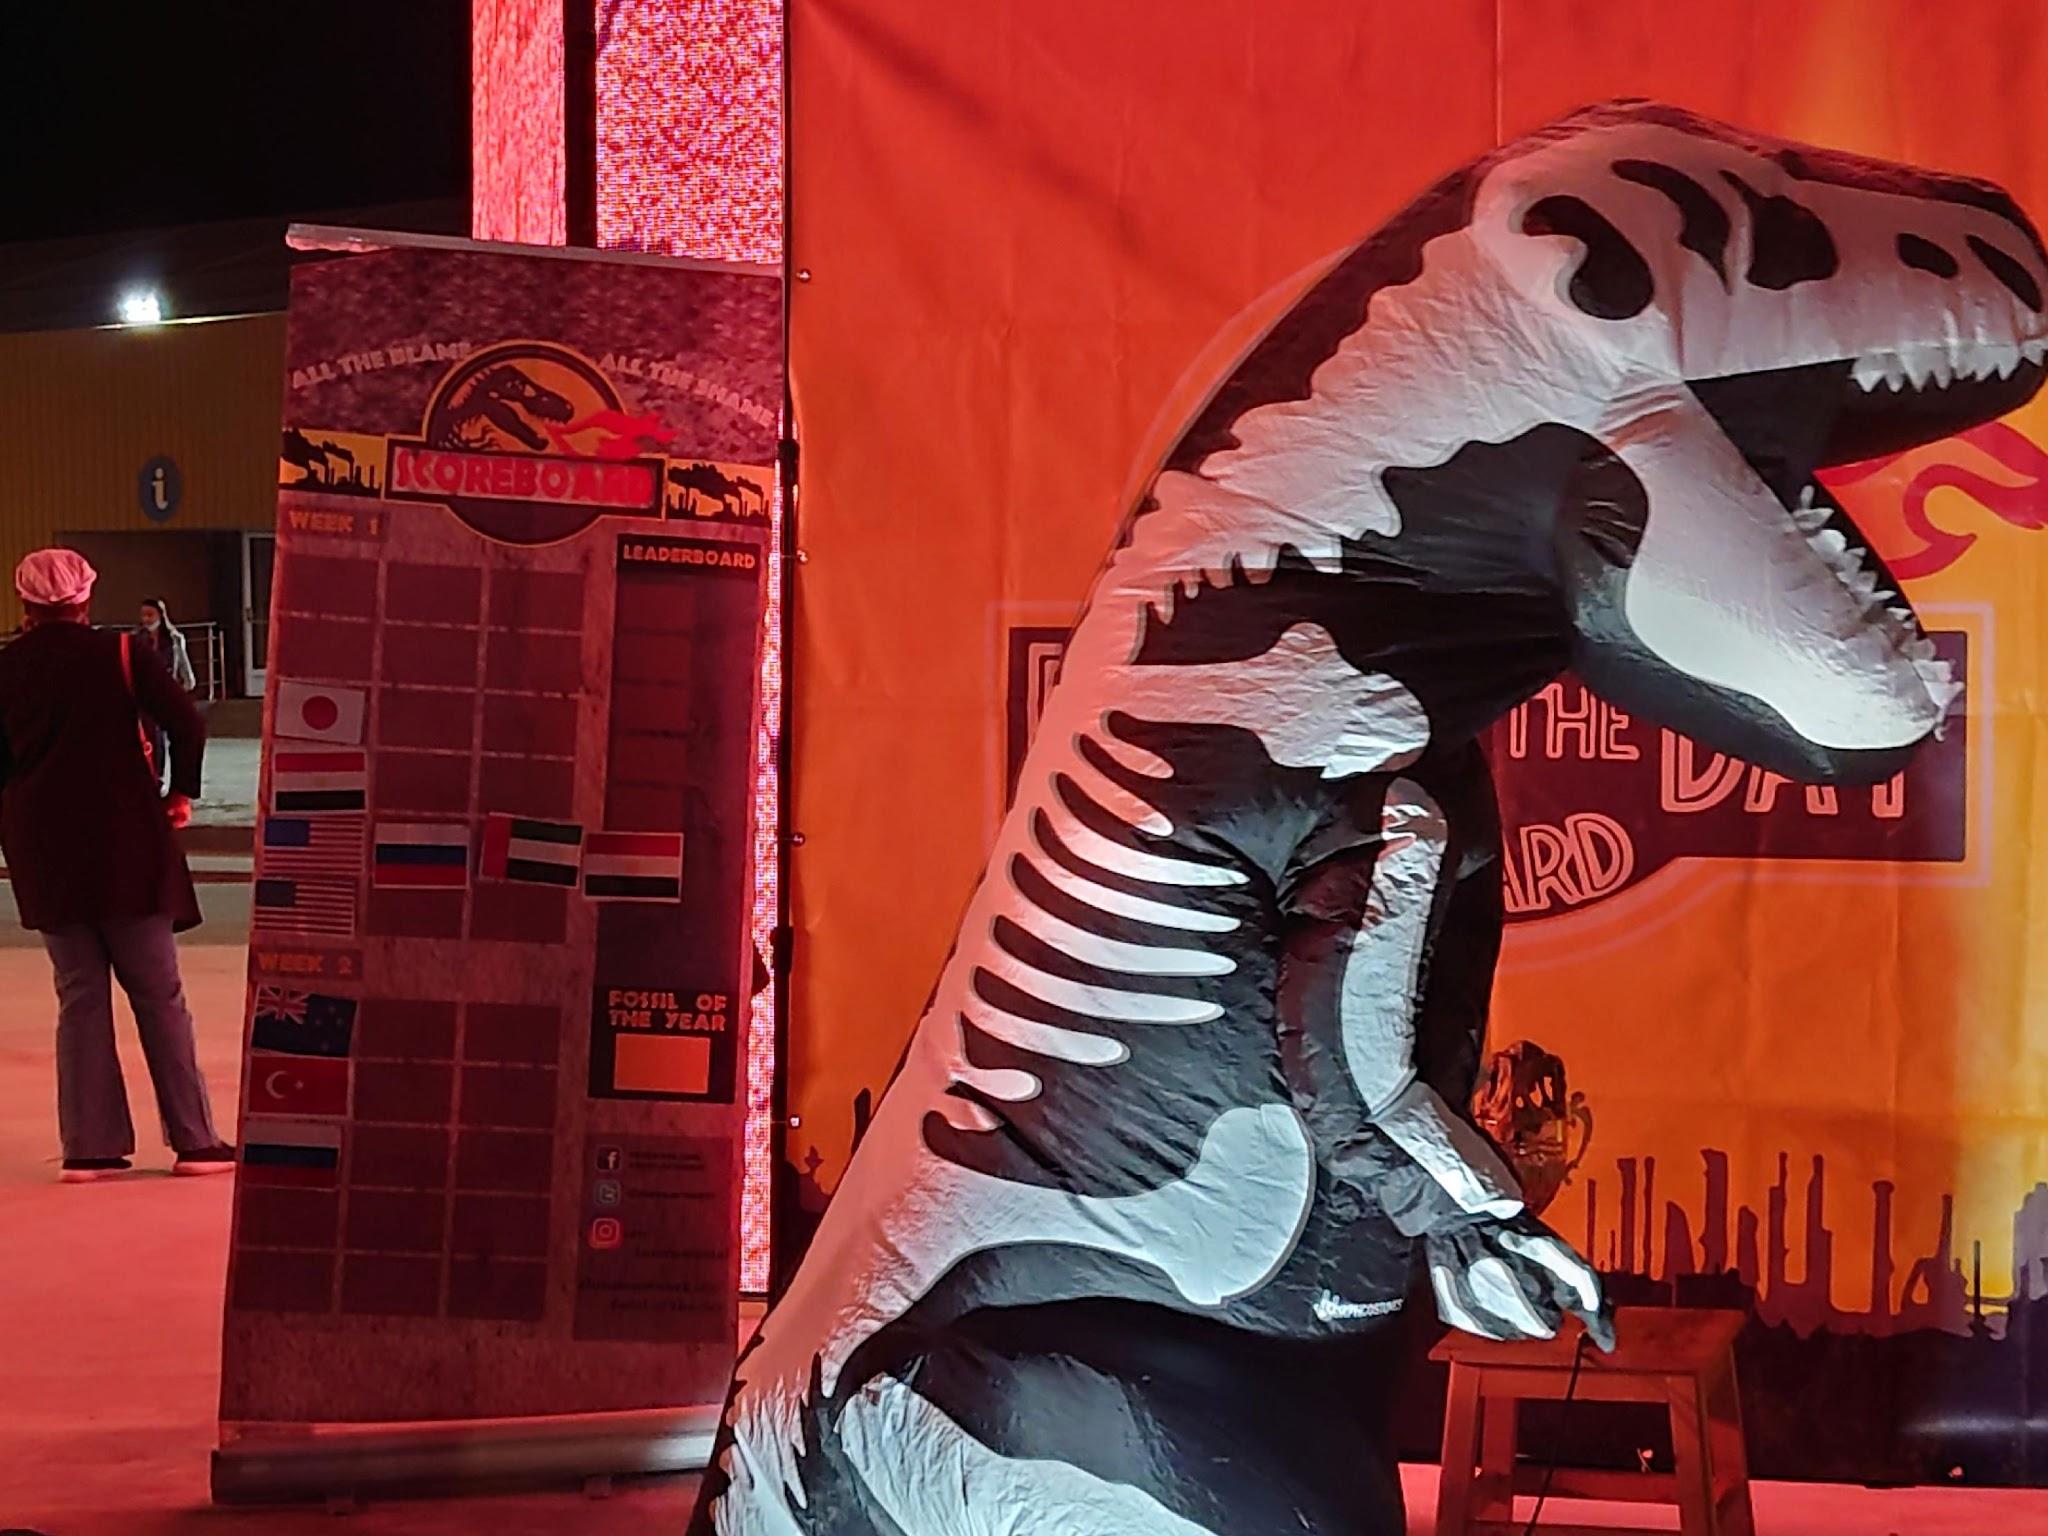 写真）“Five minutes to showtime“と書いたメモを観客に見せて回る化石賞のマスコットである恐竜。主催者自ら言う通り、ショータイムなのだ。